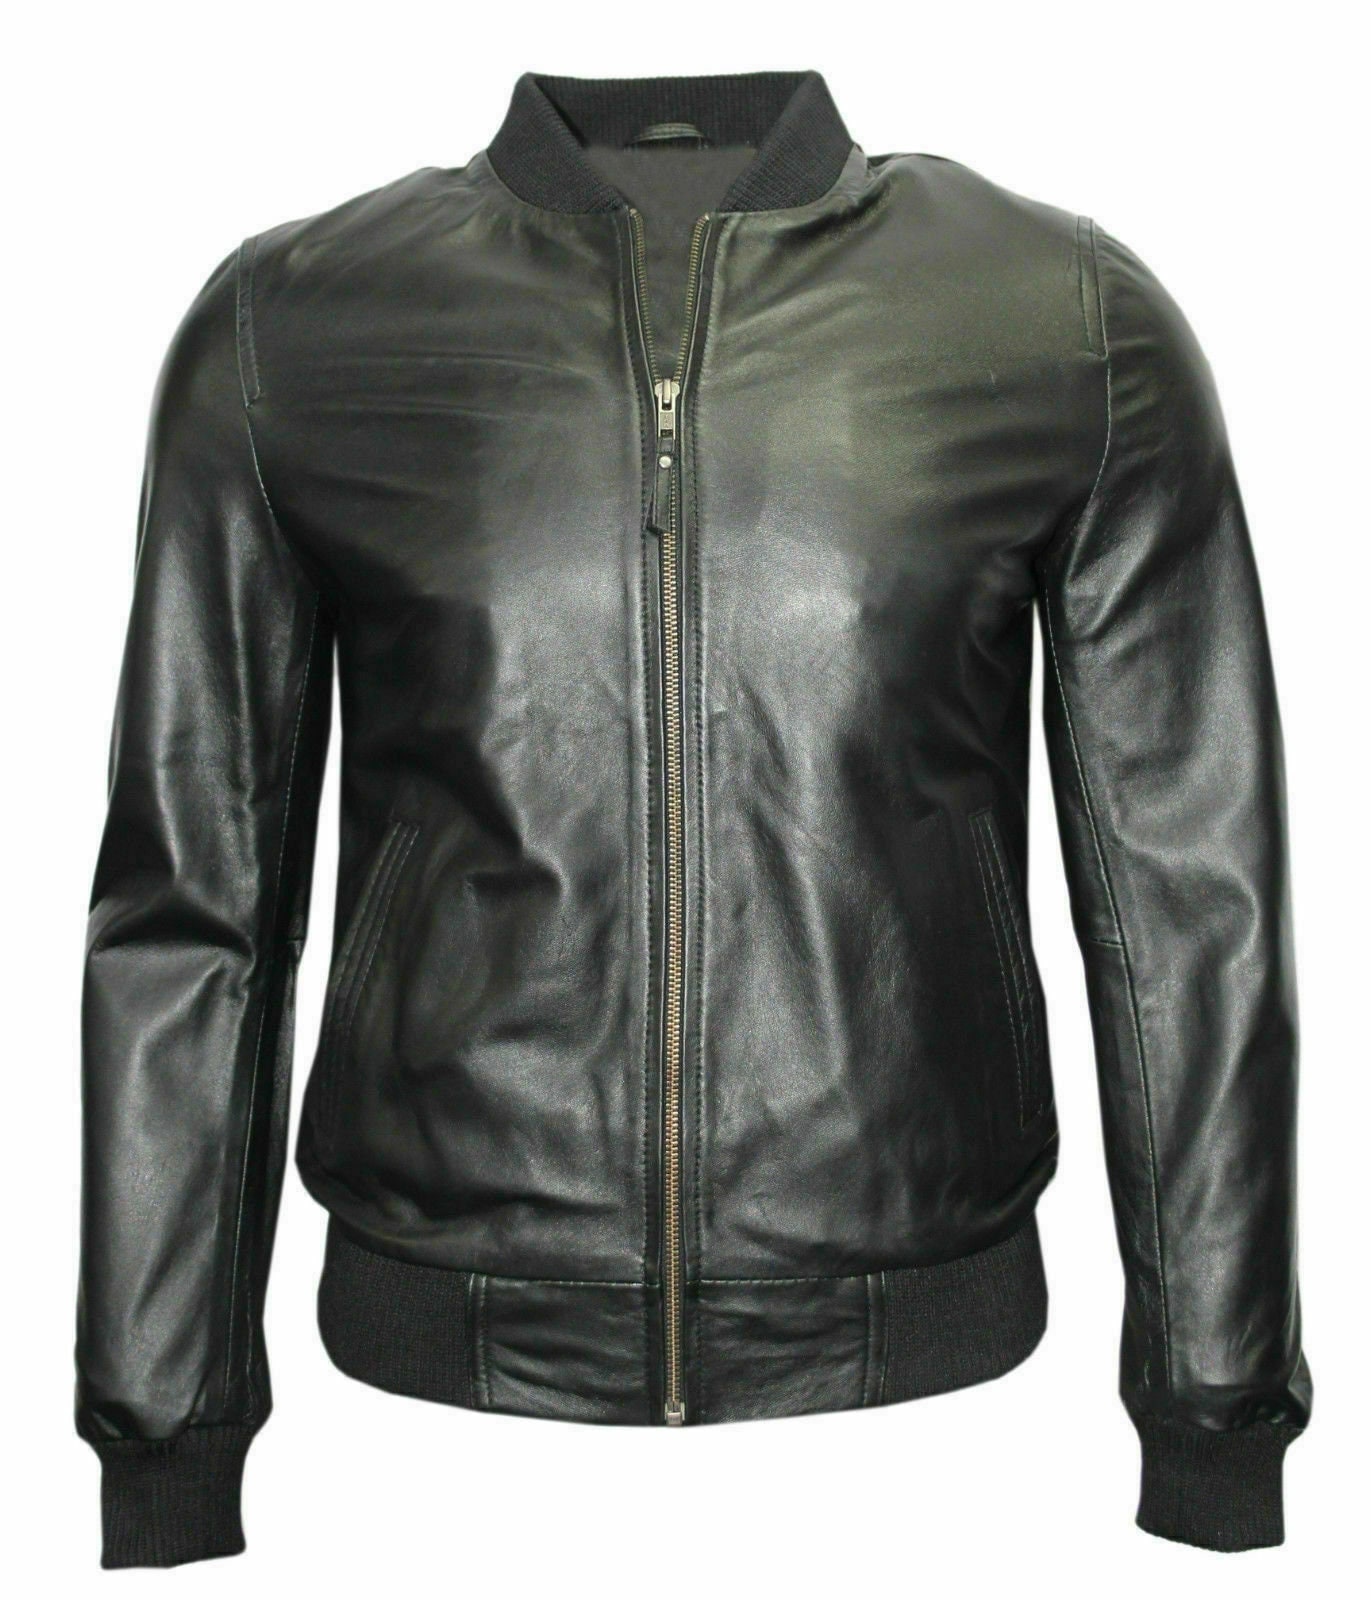 IetpShops Spain - White - Gradient Dot T-Shirt Hombre - Black Leather  jacket Off